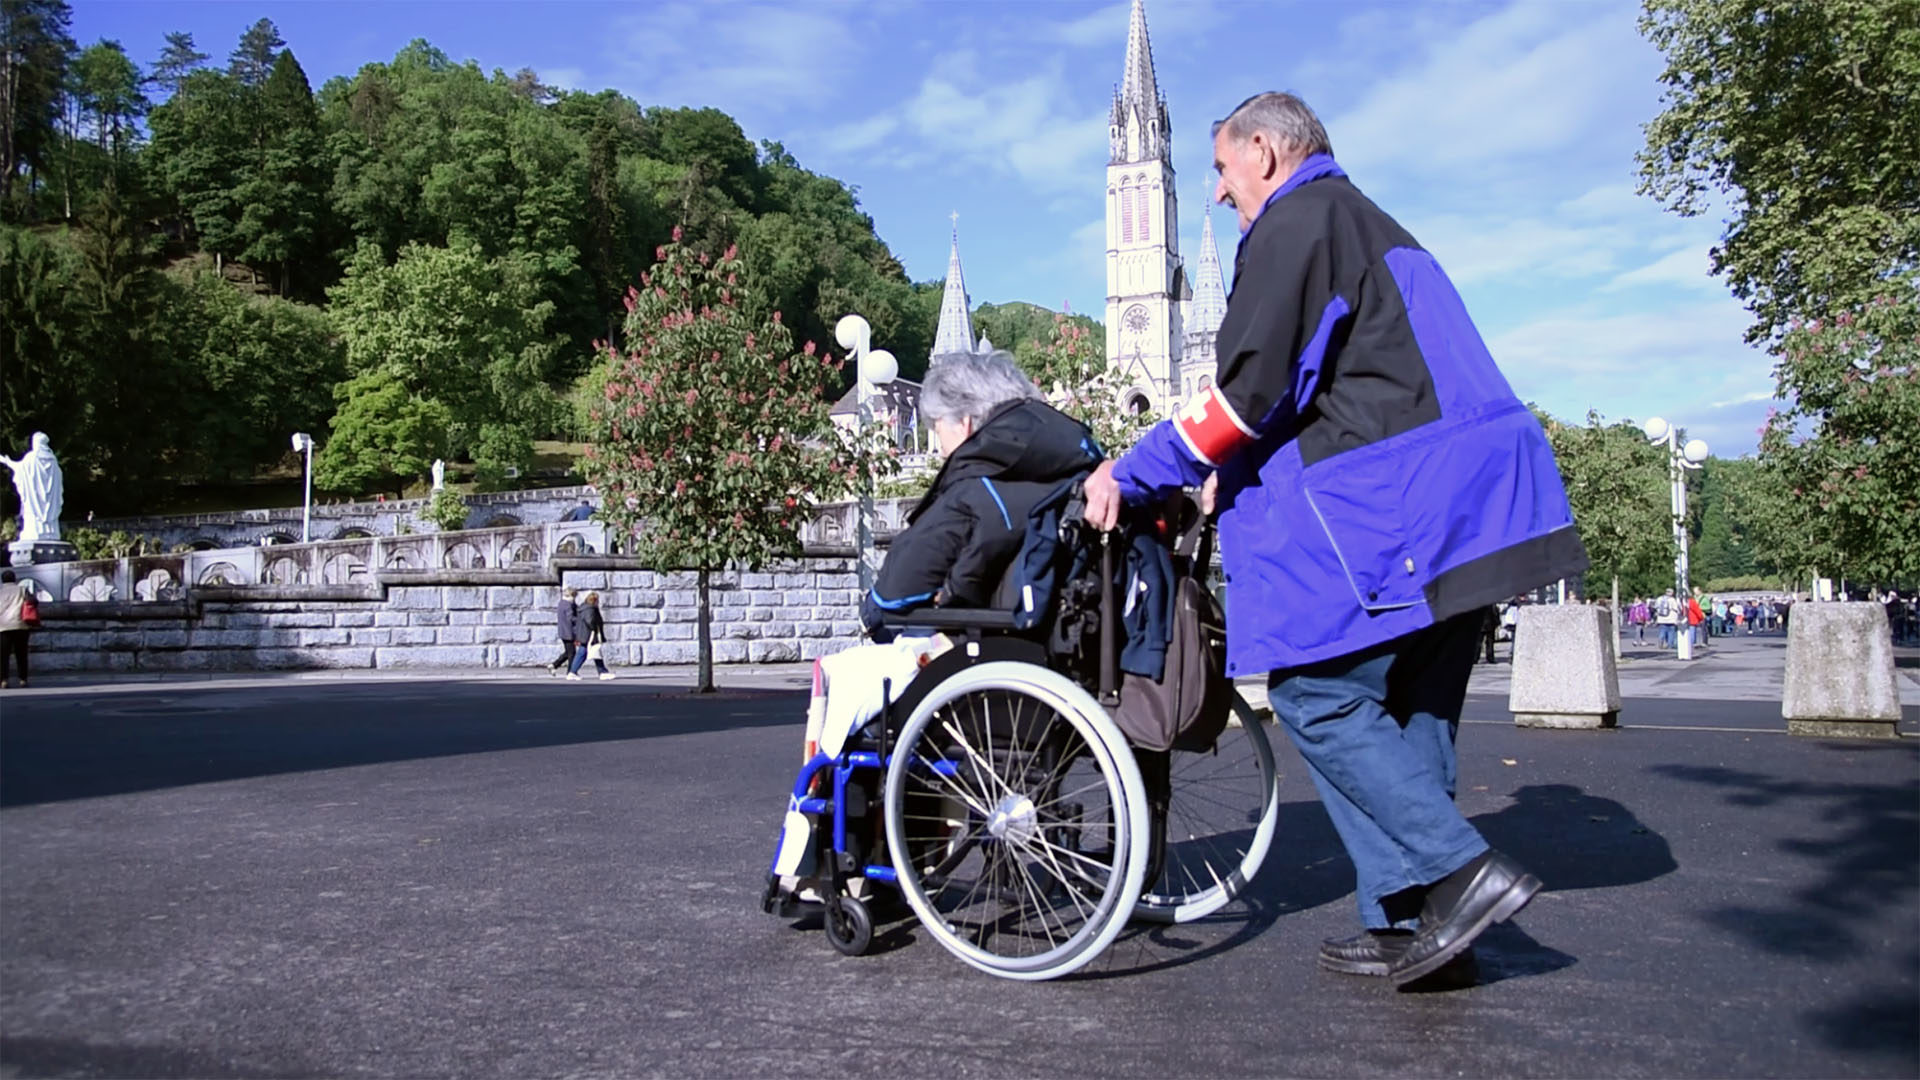 Au pèlerinage de Suisse romande à Lourdes, la priorité absolue est donnée aux plus faibles | © Grégory Roth